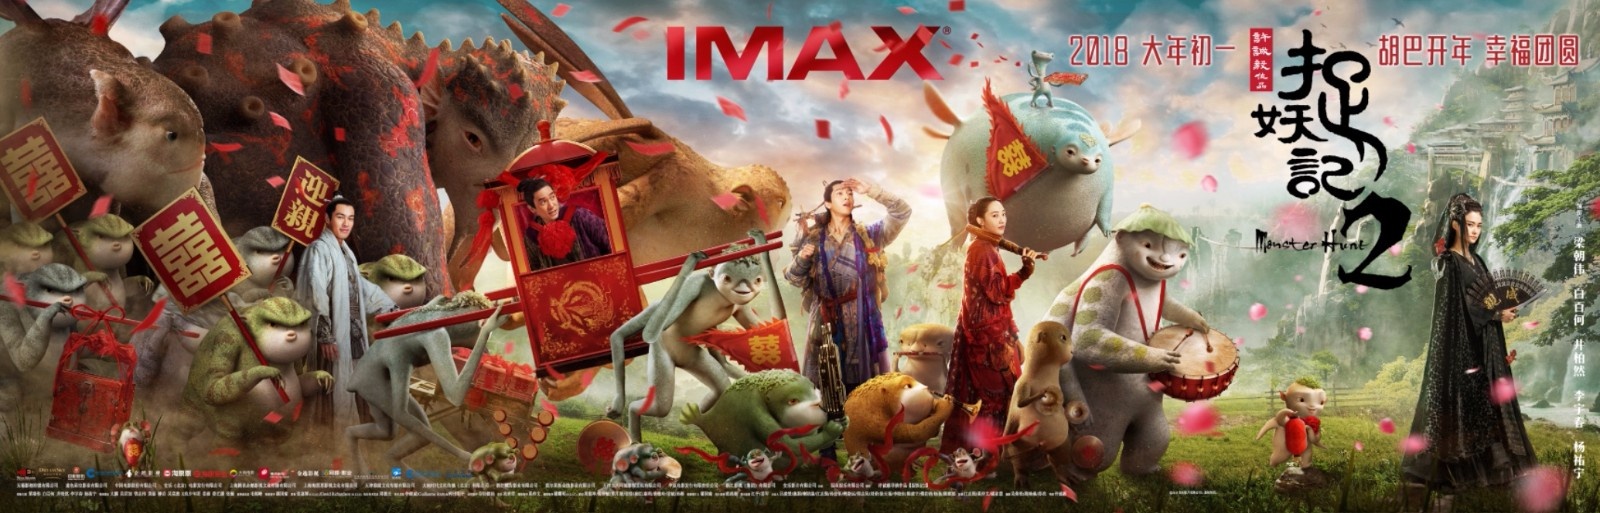 《捉妖记2》将于2月16大年初一登陆全国IMAX影院(图1)